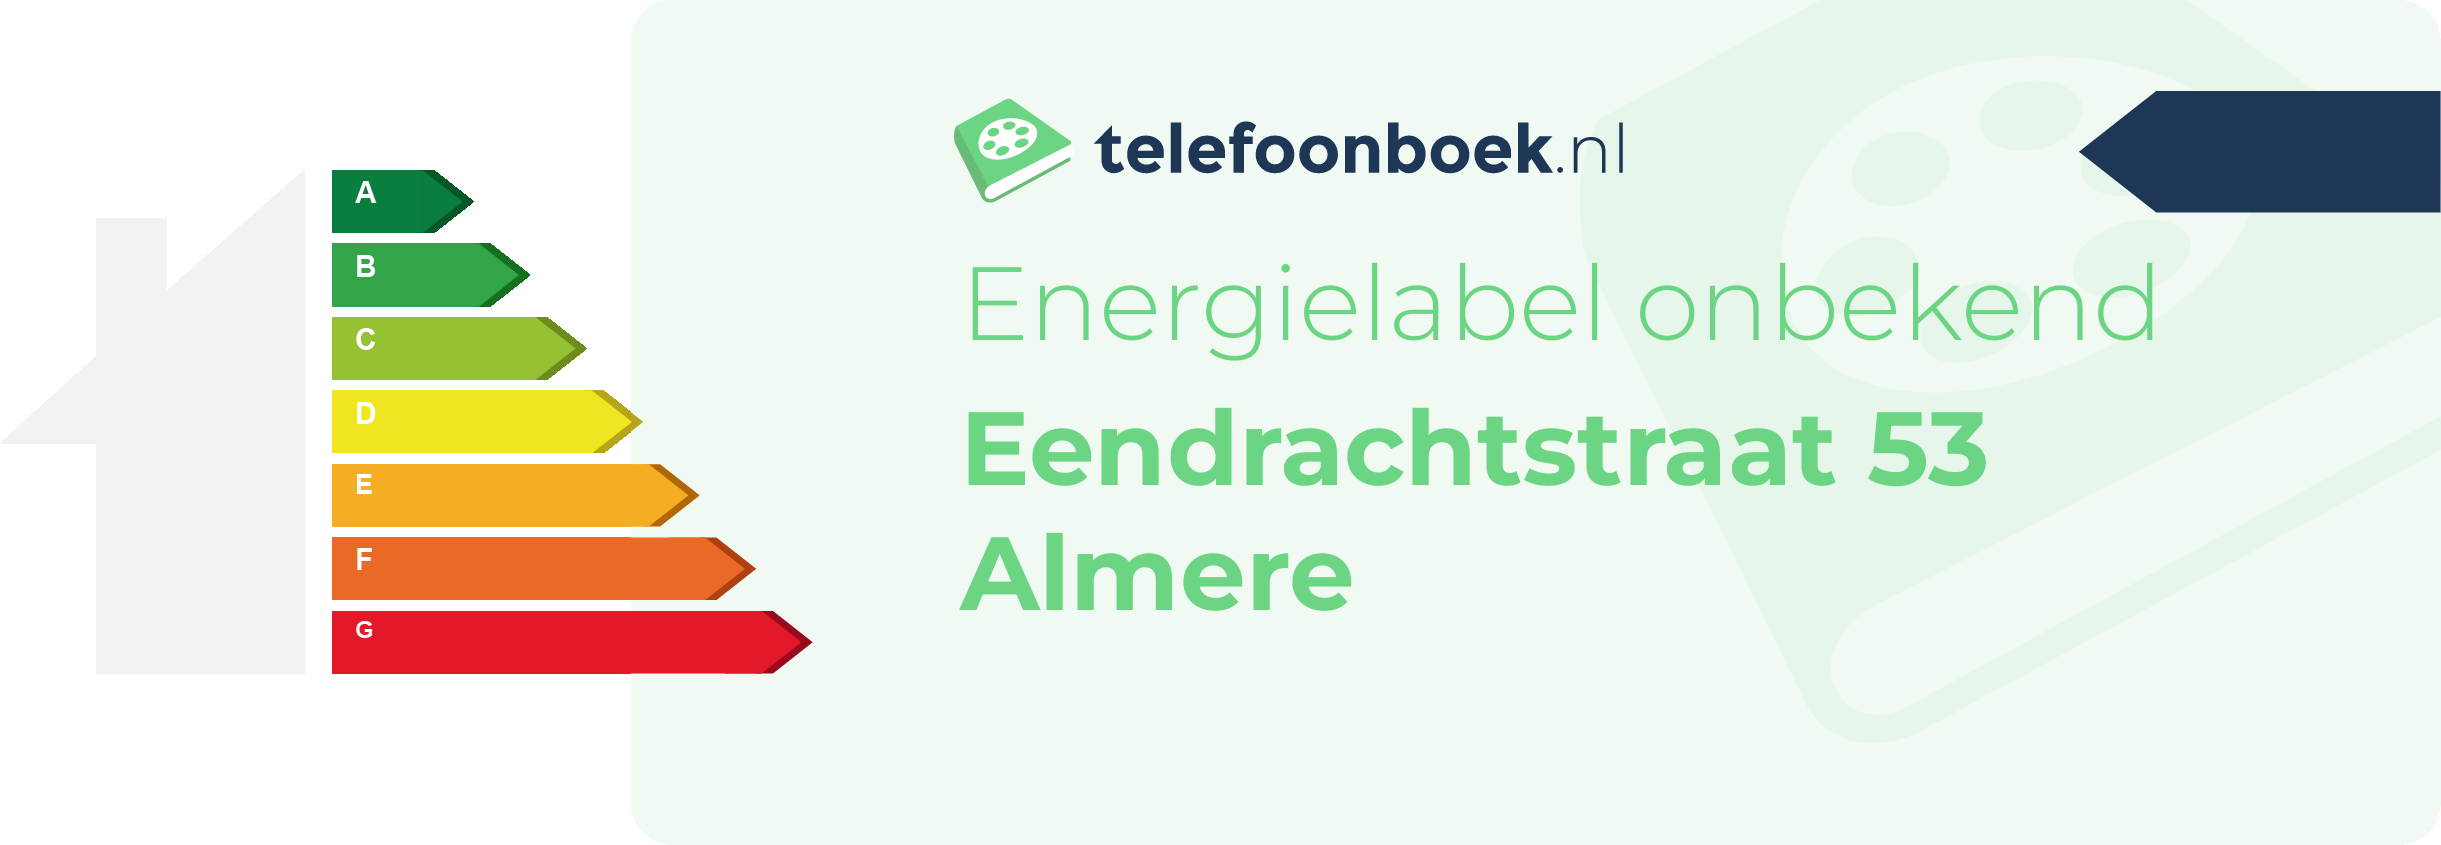 Energielabel Eendrachtstraat 53 Almere